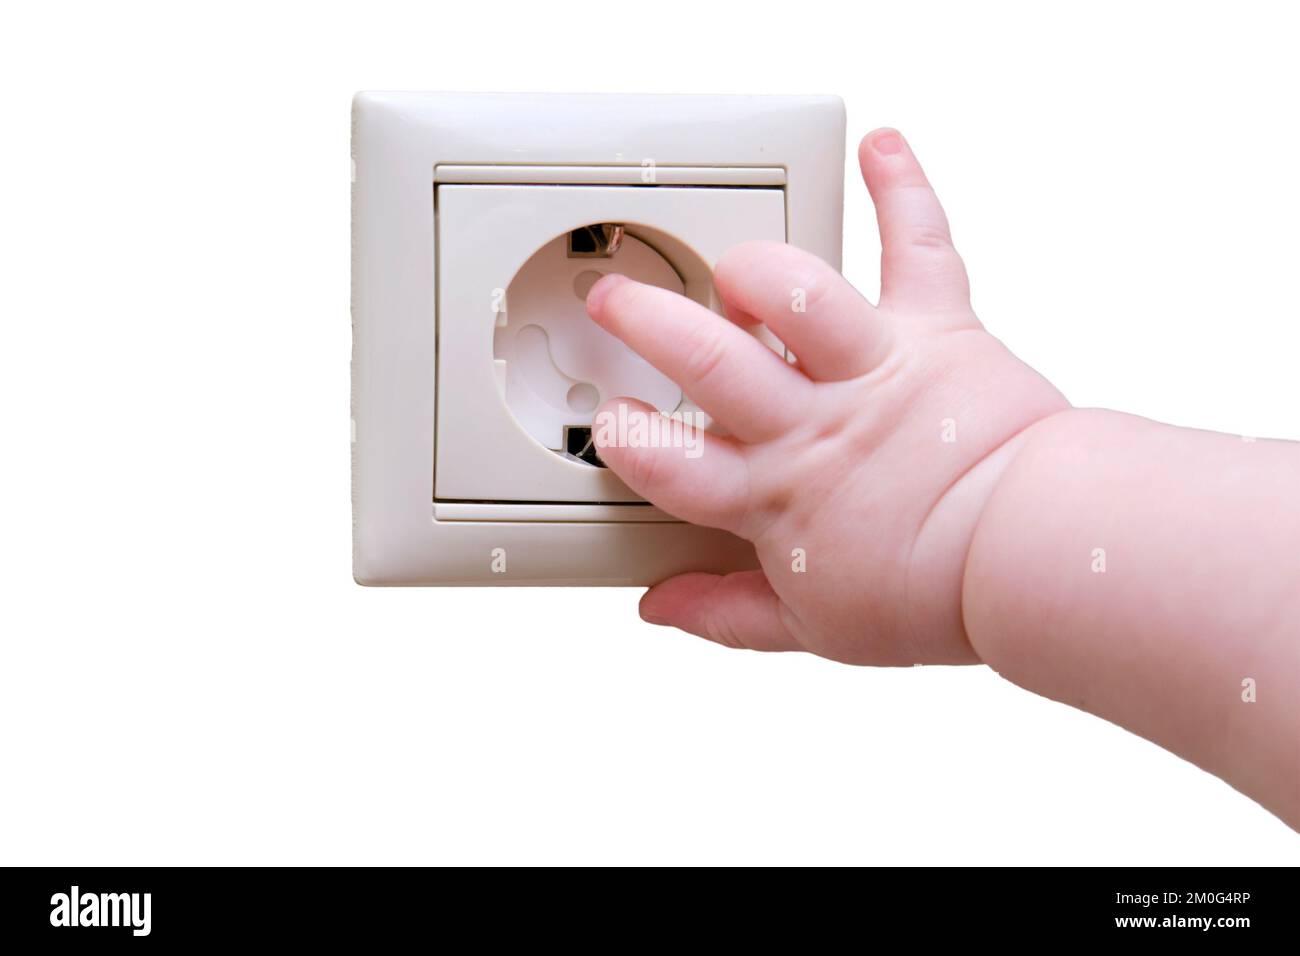 Bébé tout-petit entre dans la prise électrique sur le mur de la maison avec  sa main, isolée sur un fond blanc. Danger et protection des doigts d'enfant  Photo Stock - Alamy